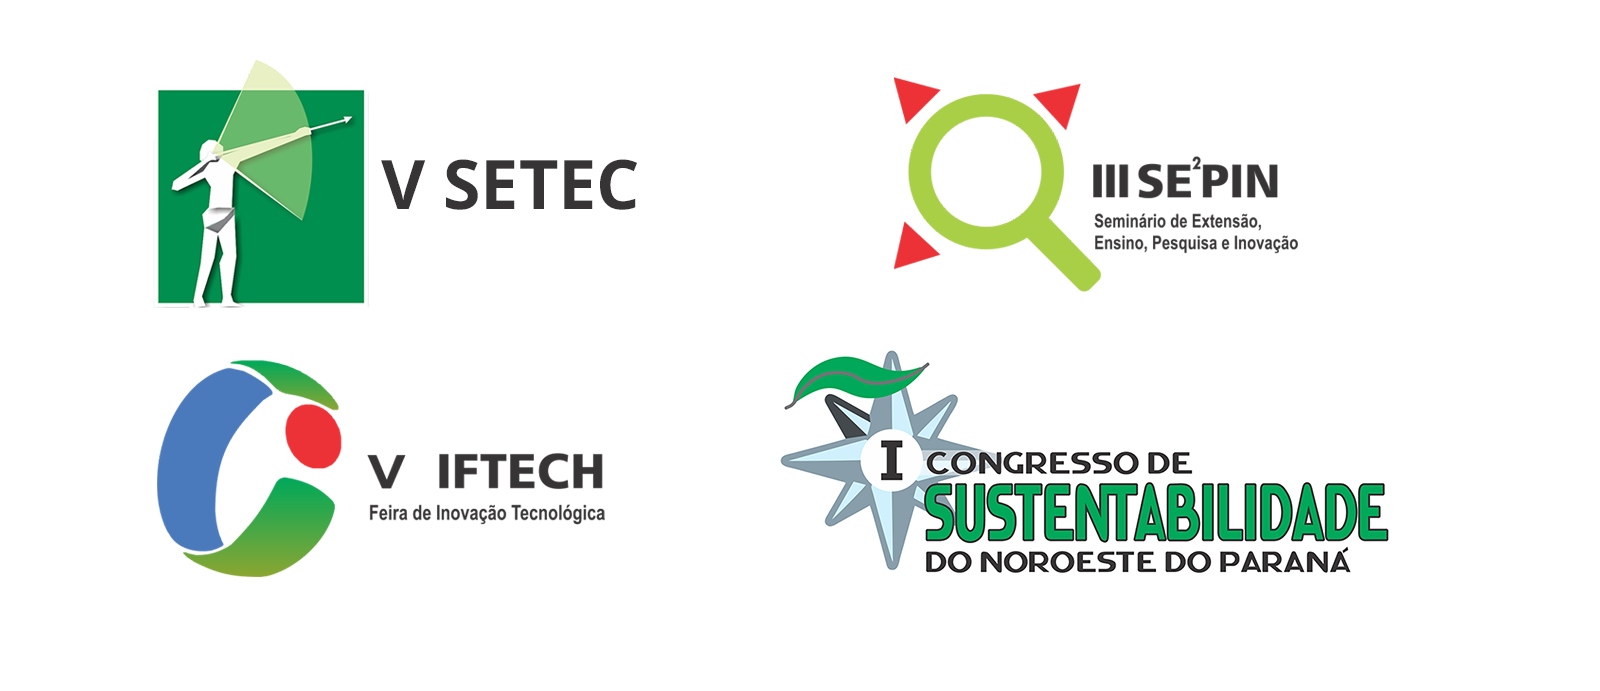 I Congresso de Sustentabilidade do Noroeste do Paraná - Ensino de Ciências e Agrárias